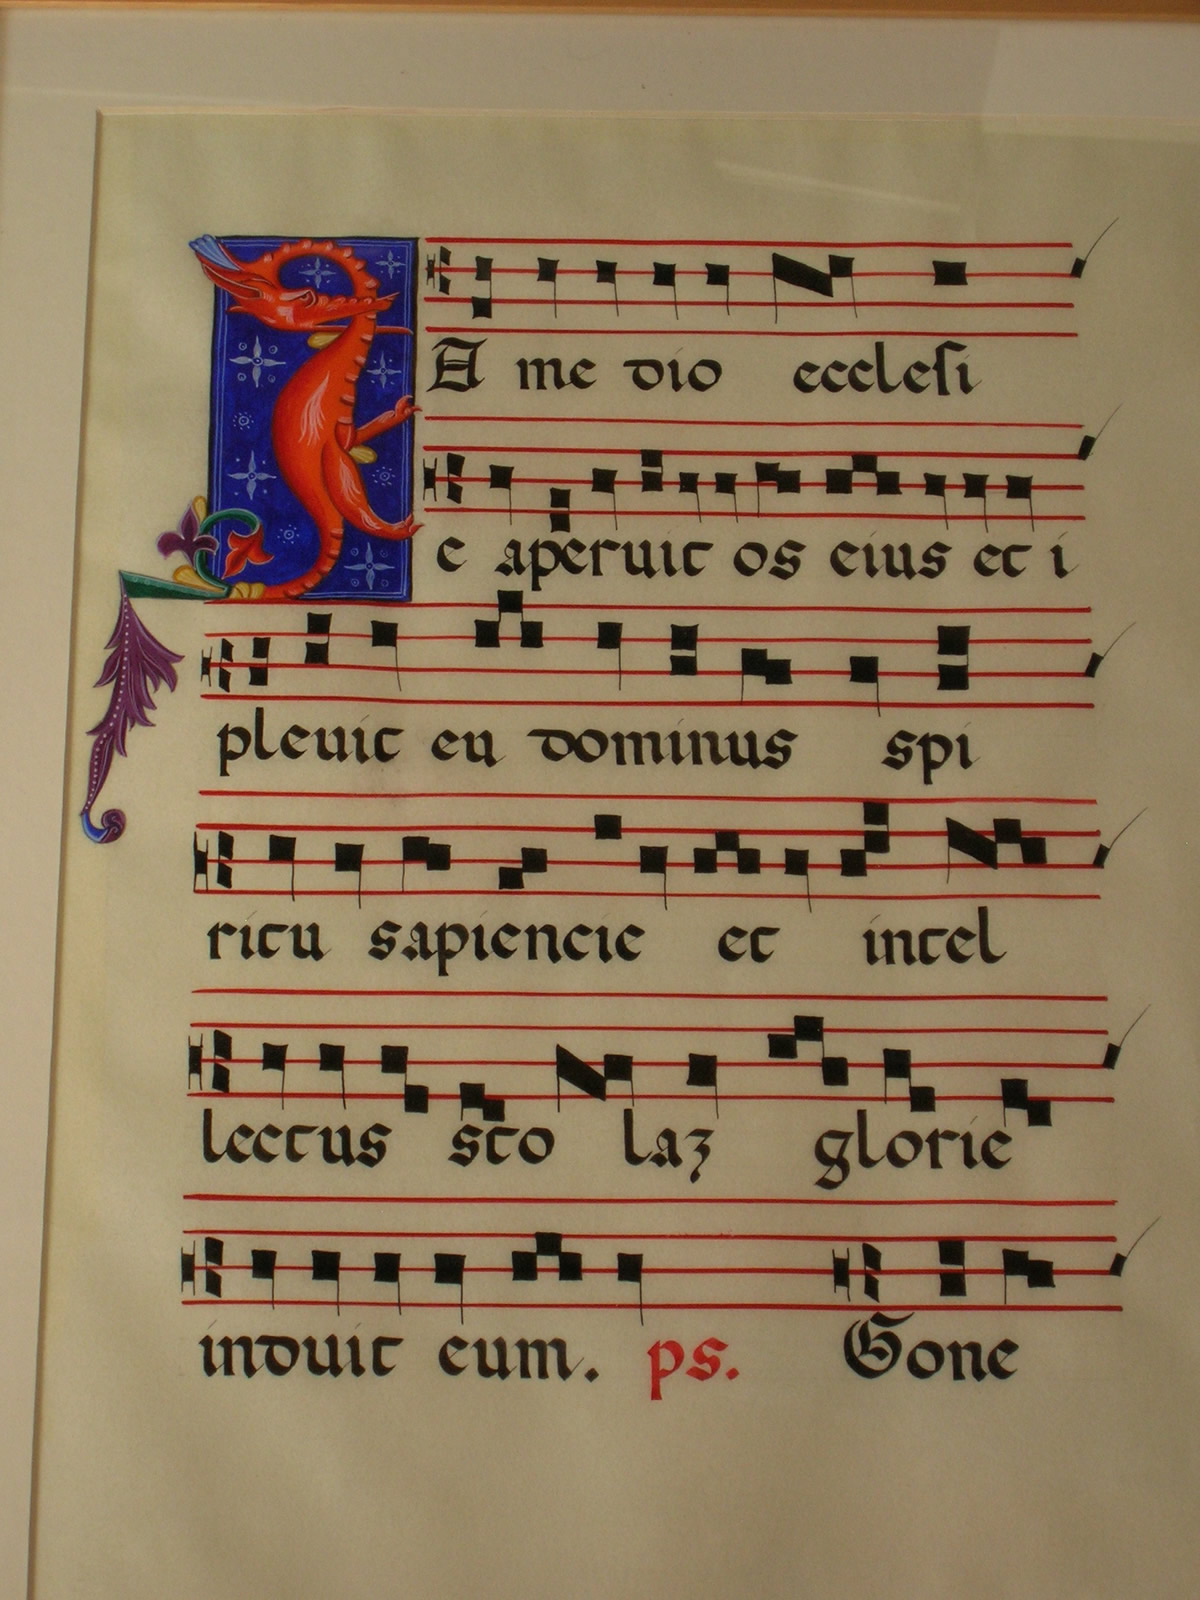 Anthem Book XIV Century, cm. 35 x 50 on parchment paper.